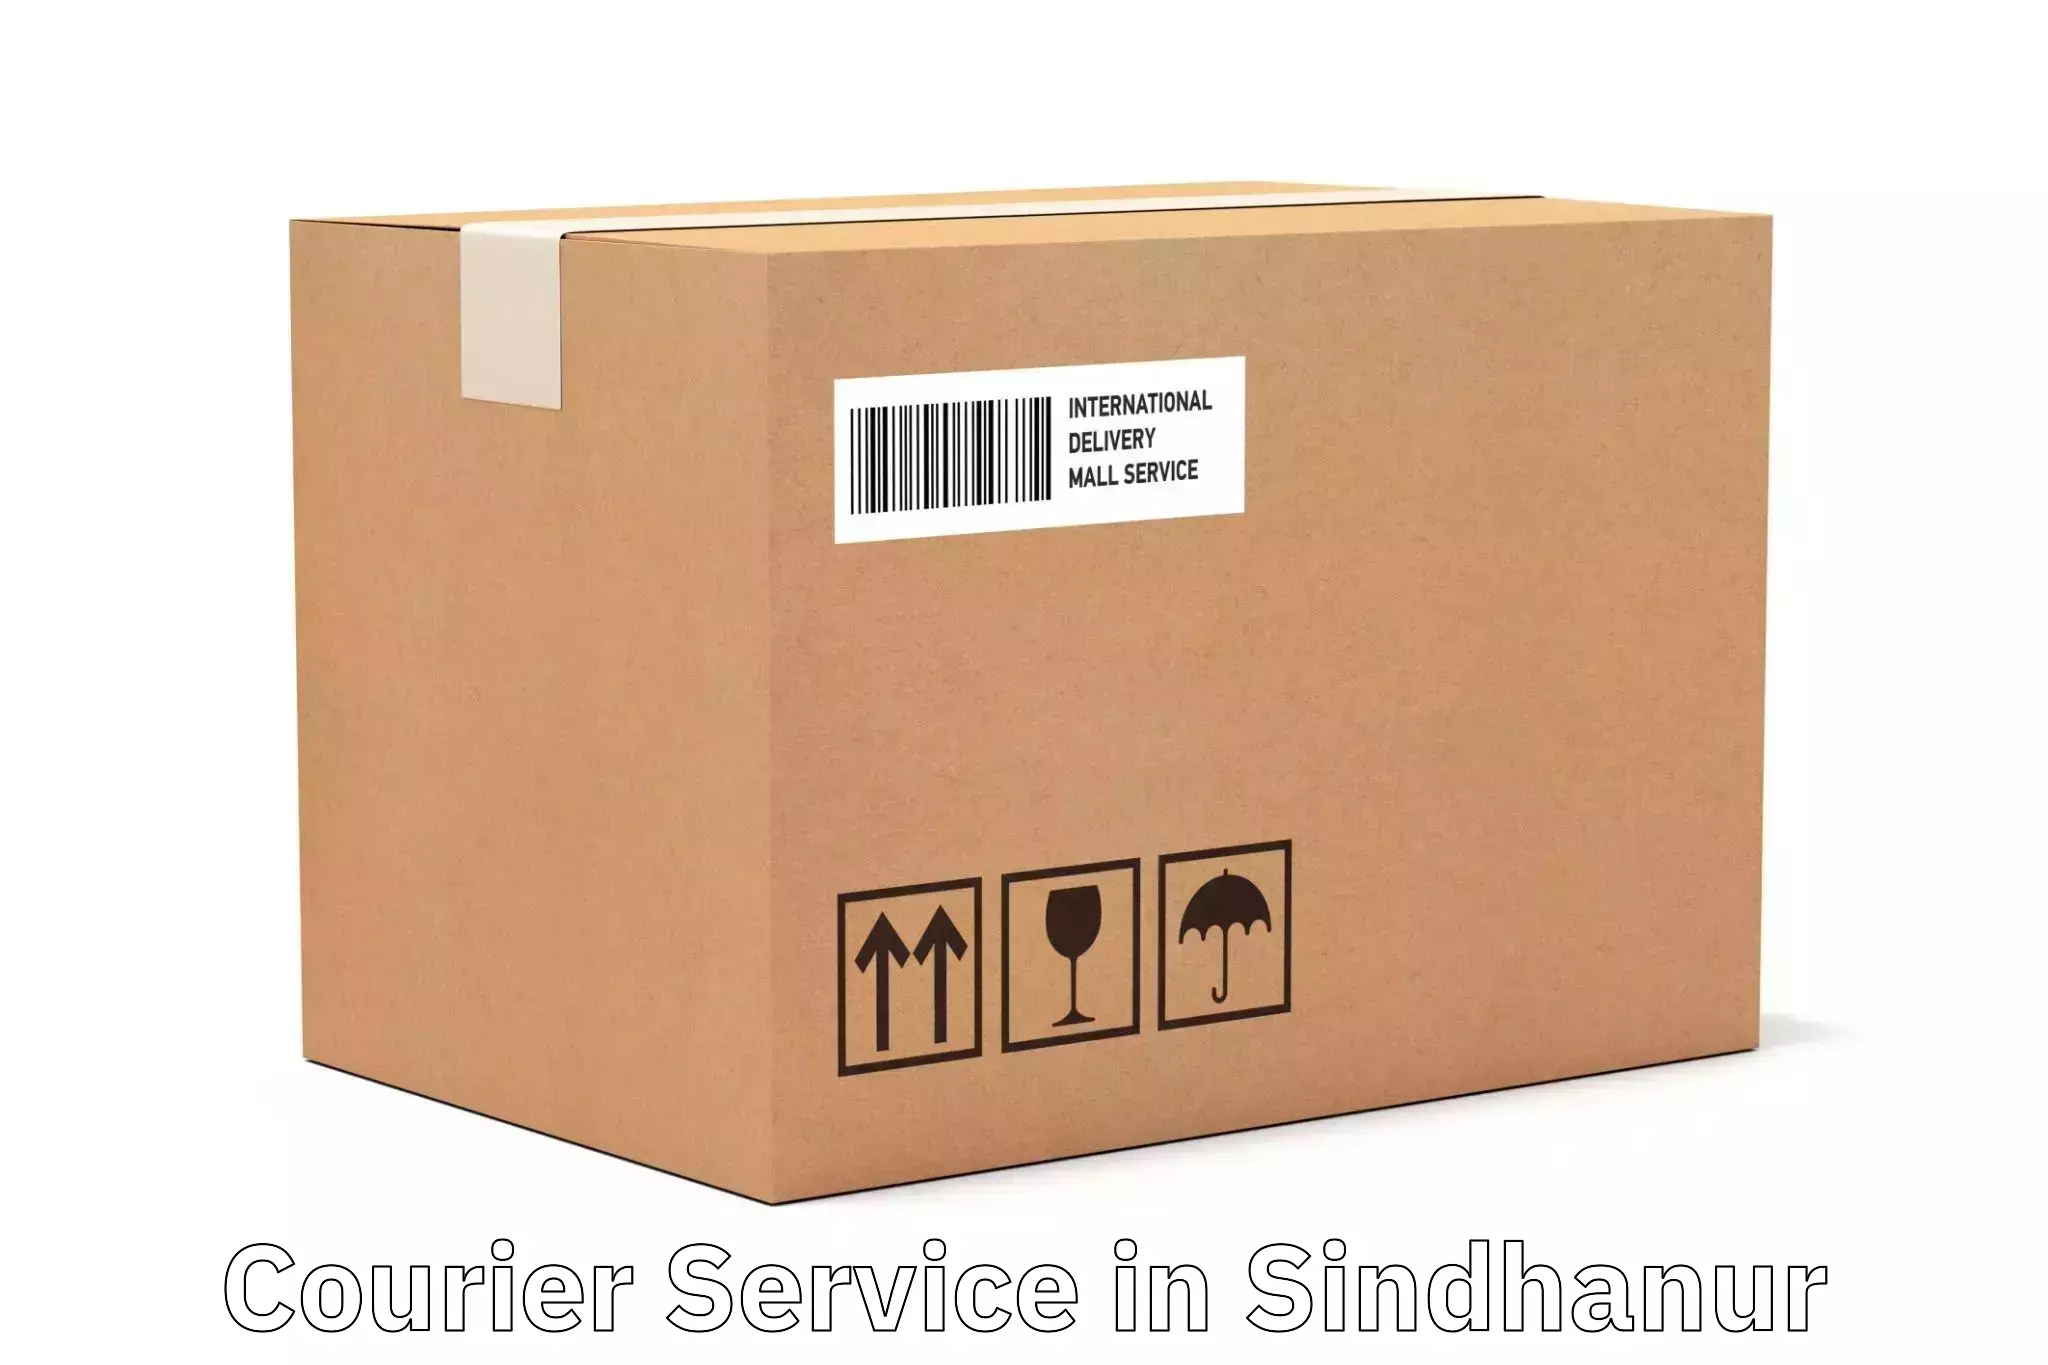 Speedy delivery service in Sindhanur